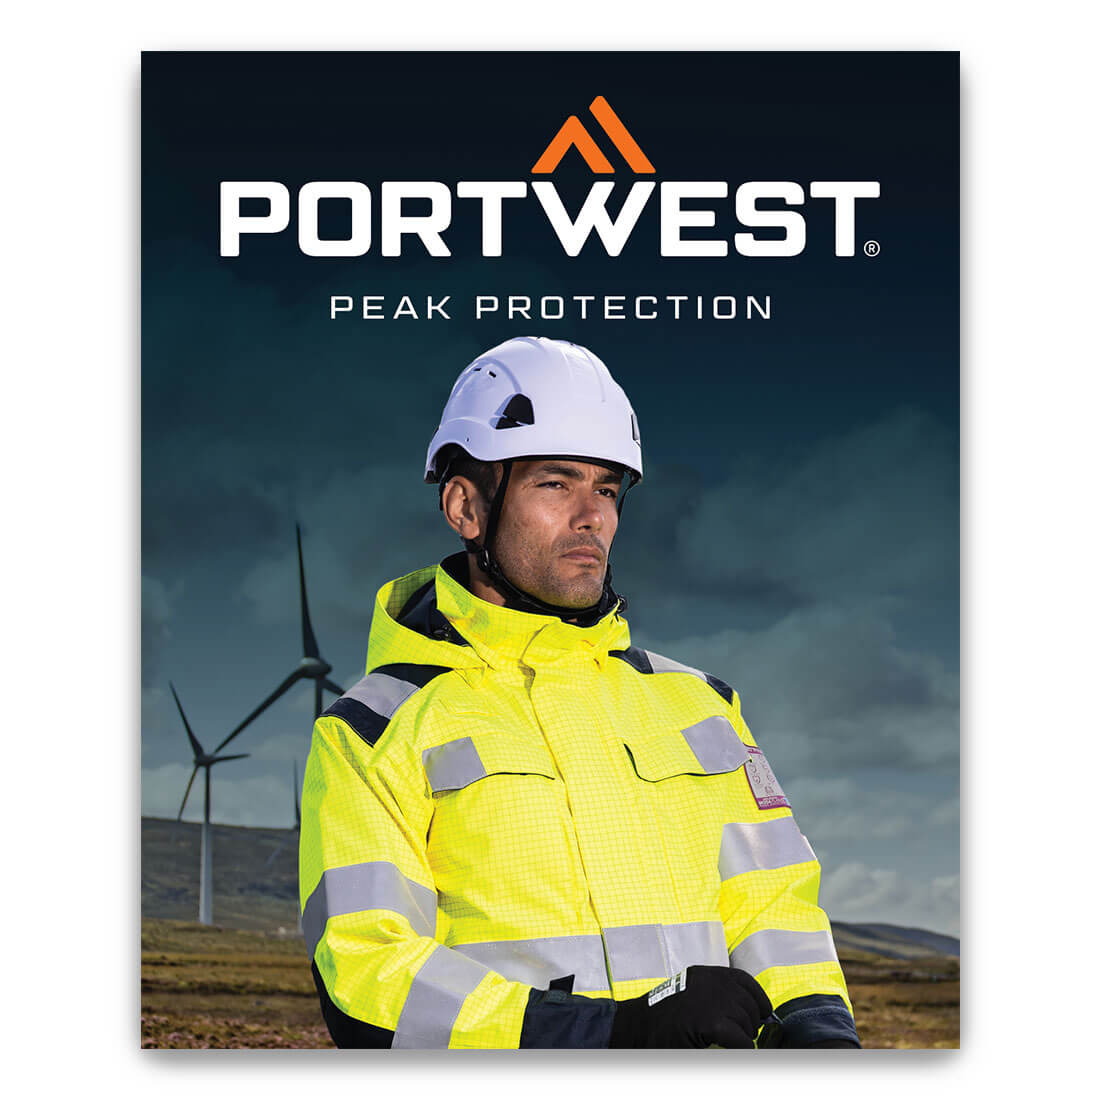 Portwest Catalogue